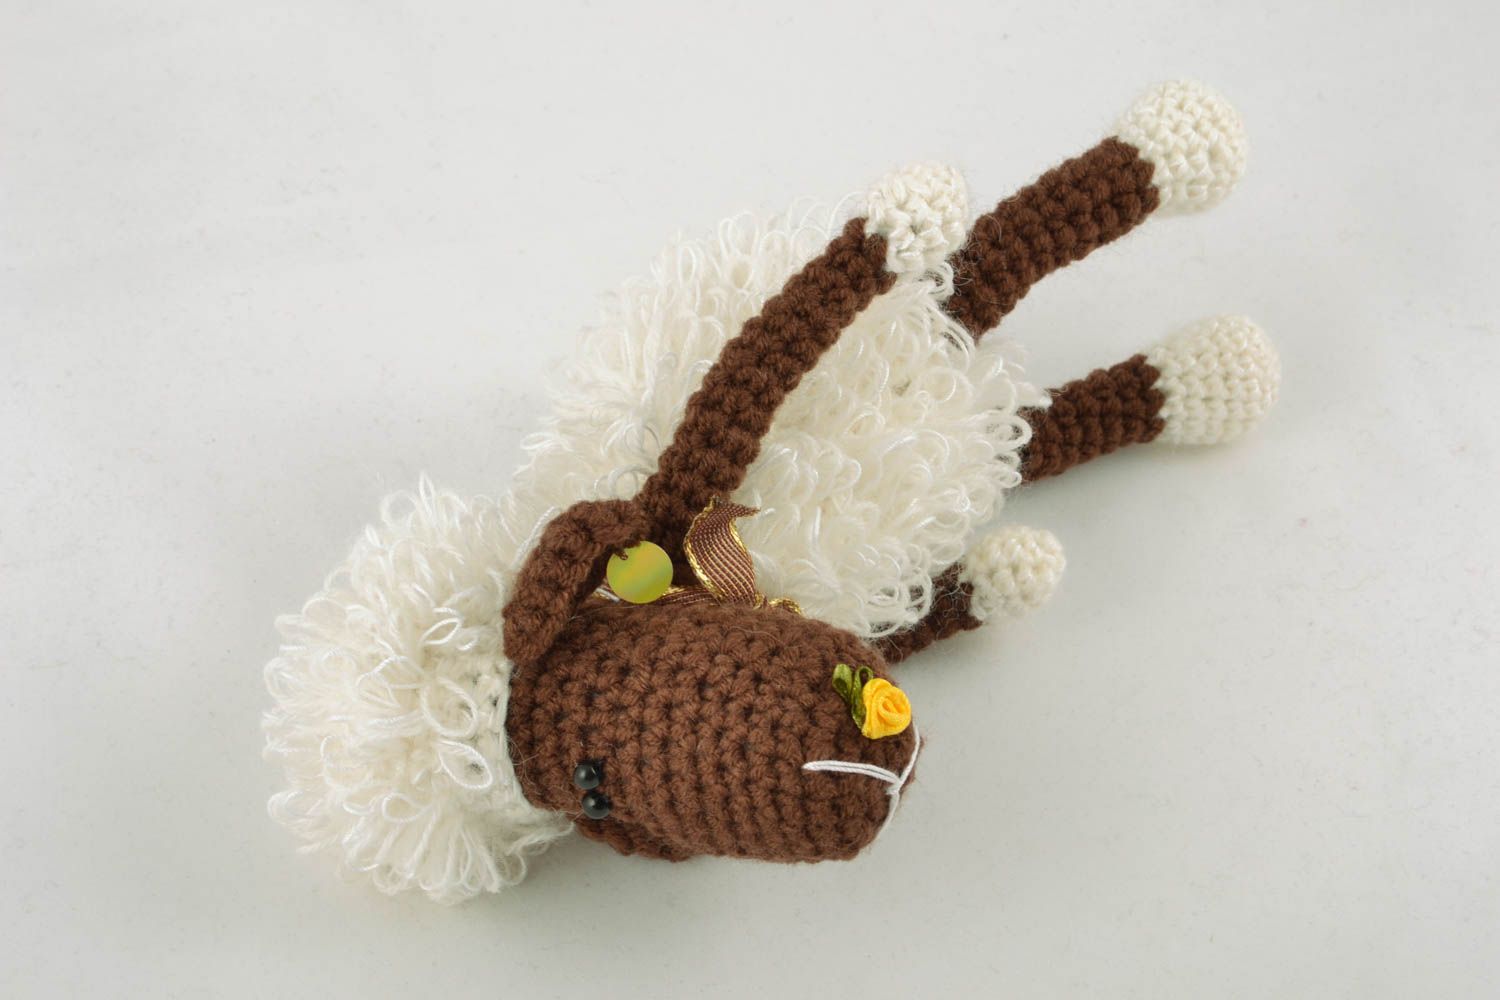 Homemade crochet toy Cheerful Lamb photo 2